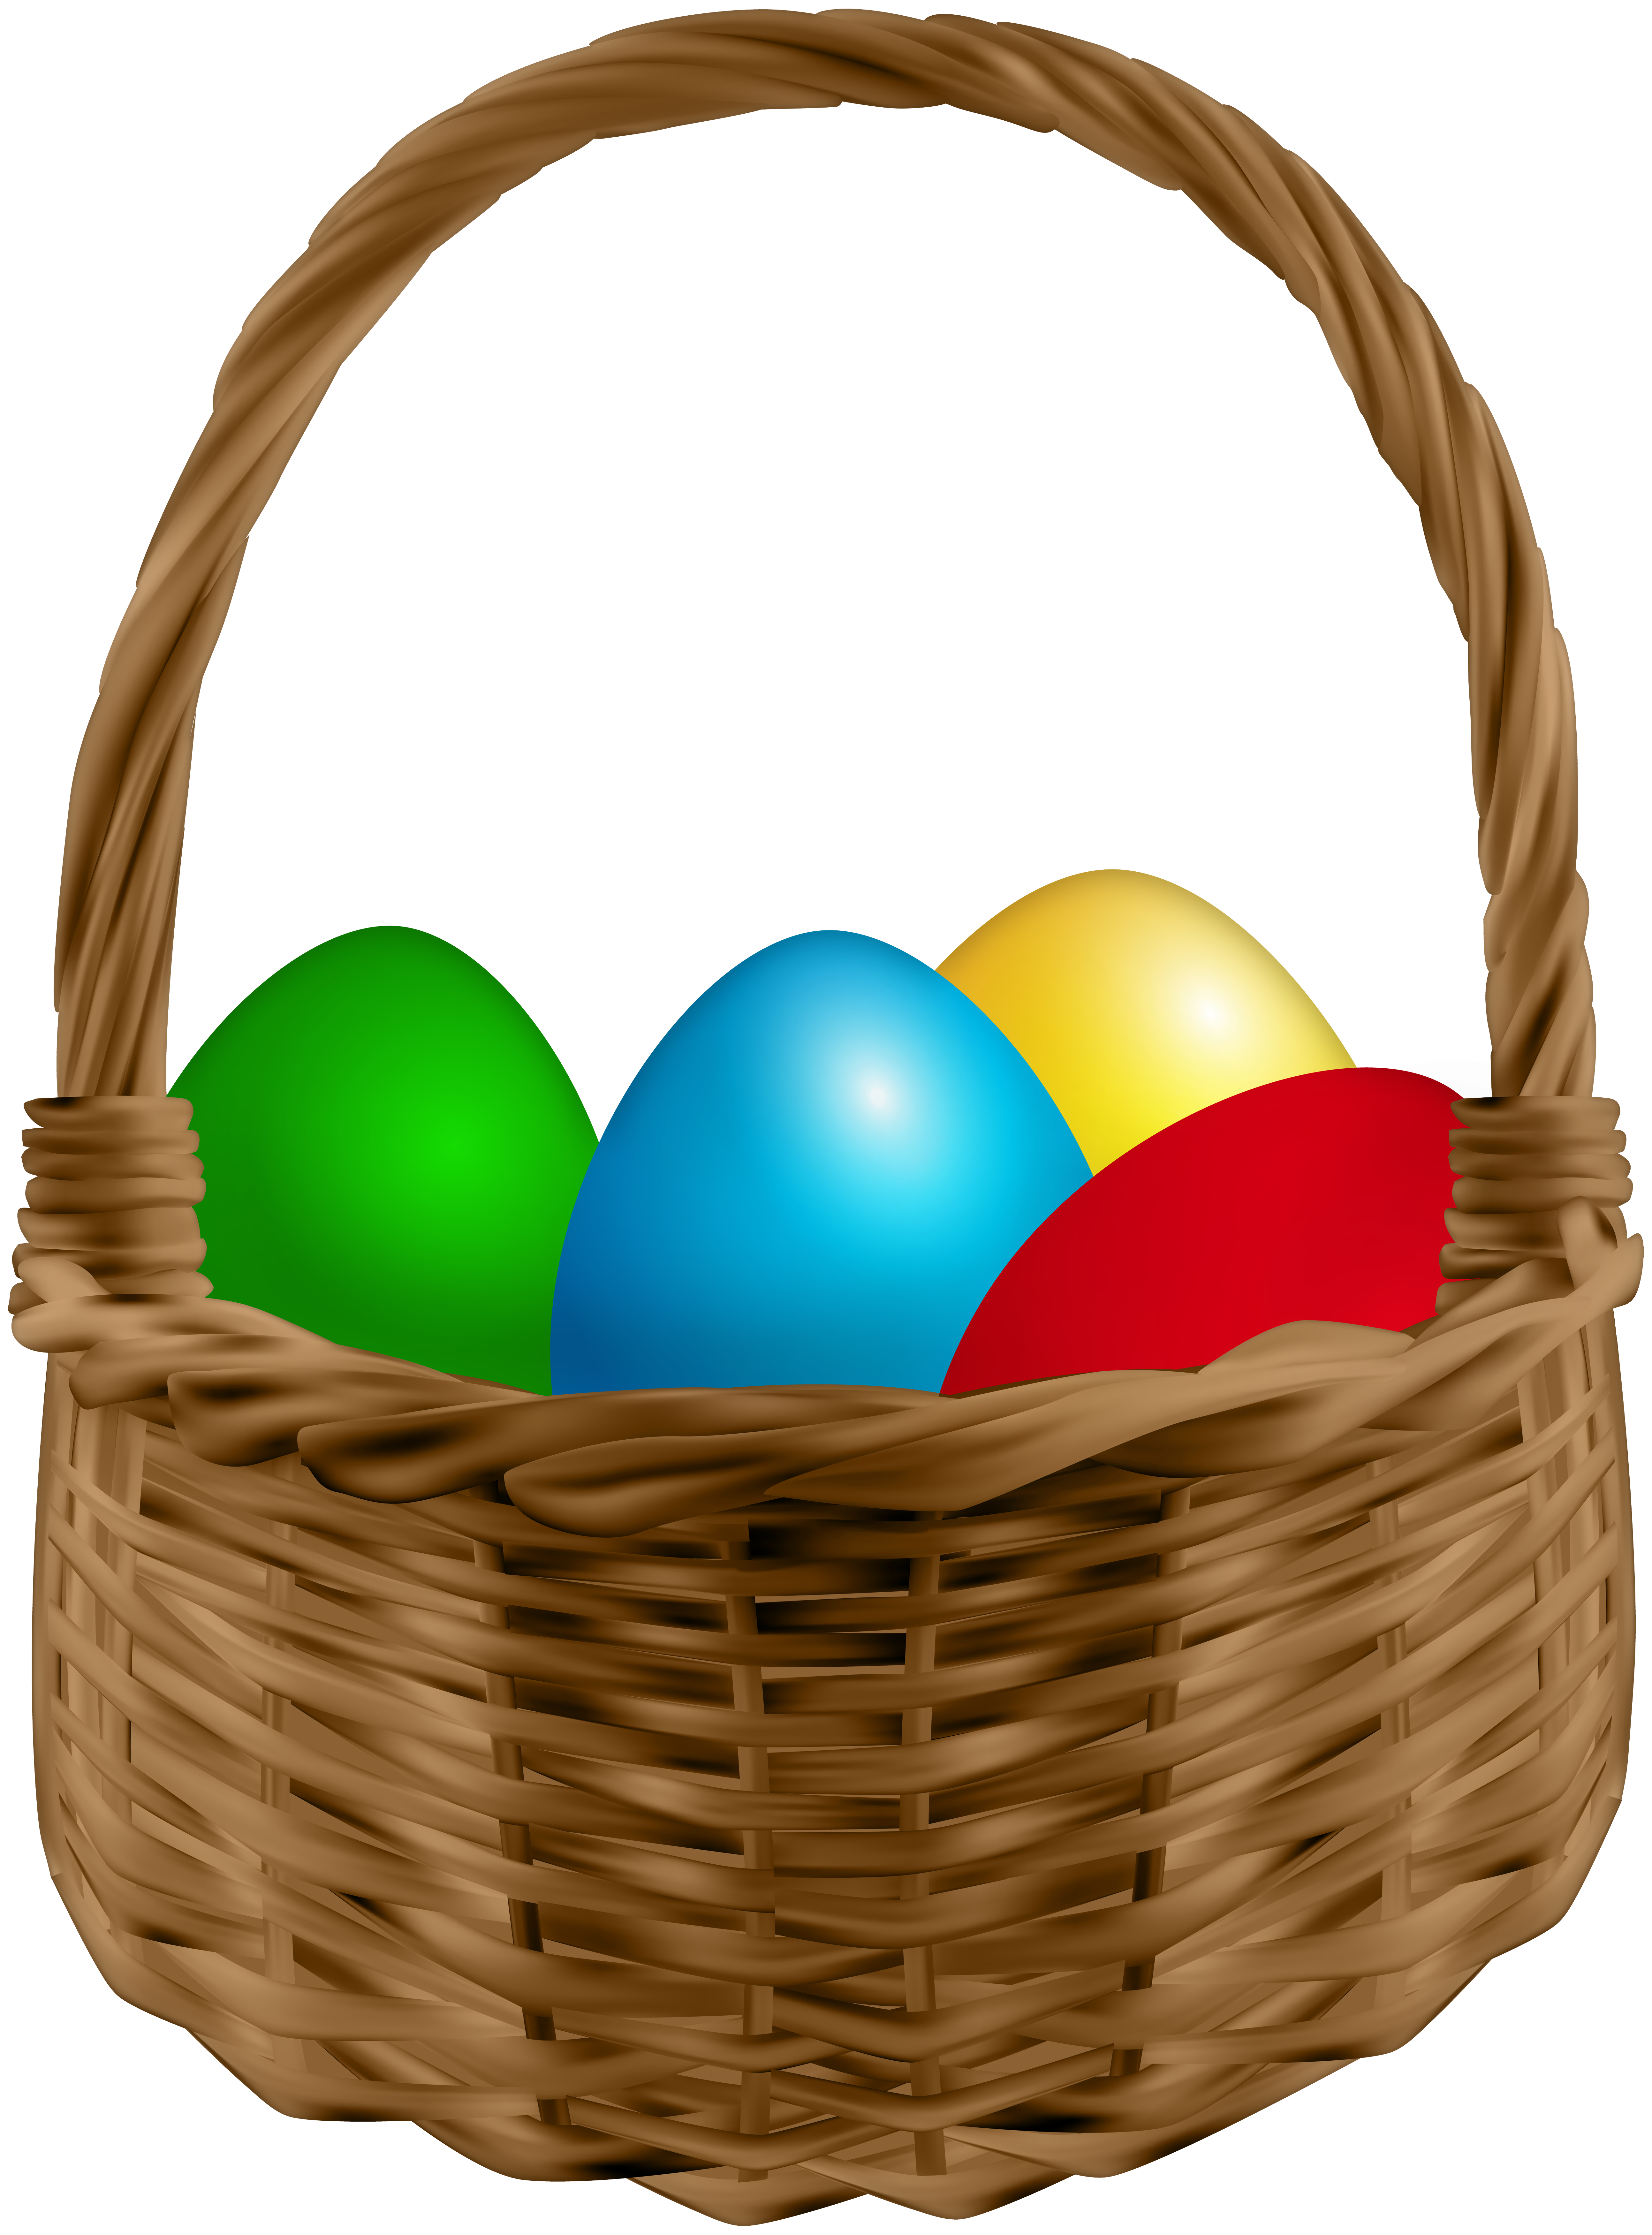 Easter Basket PNG Image.